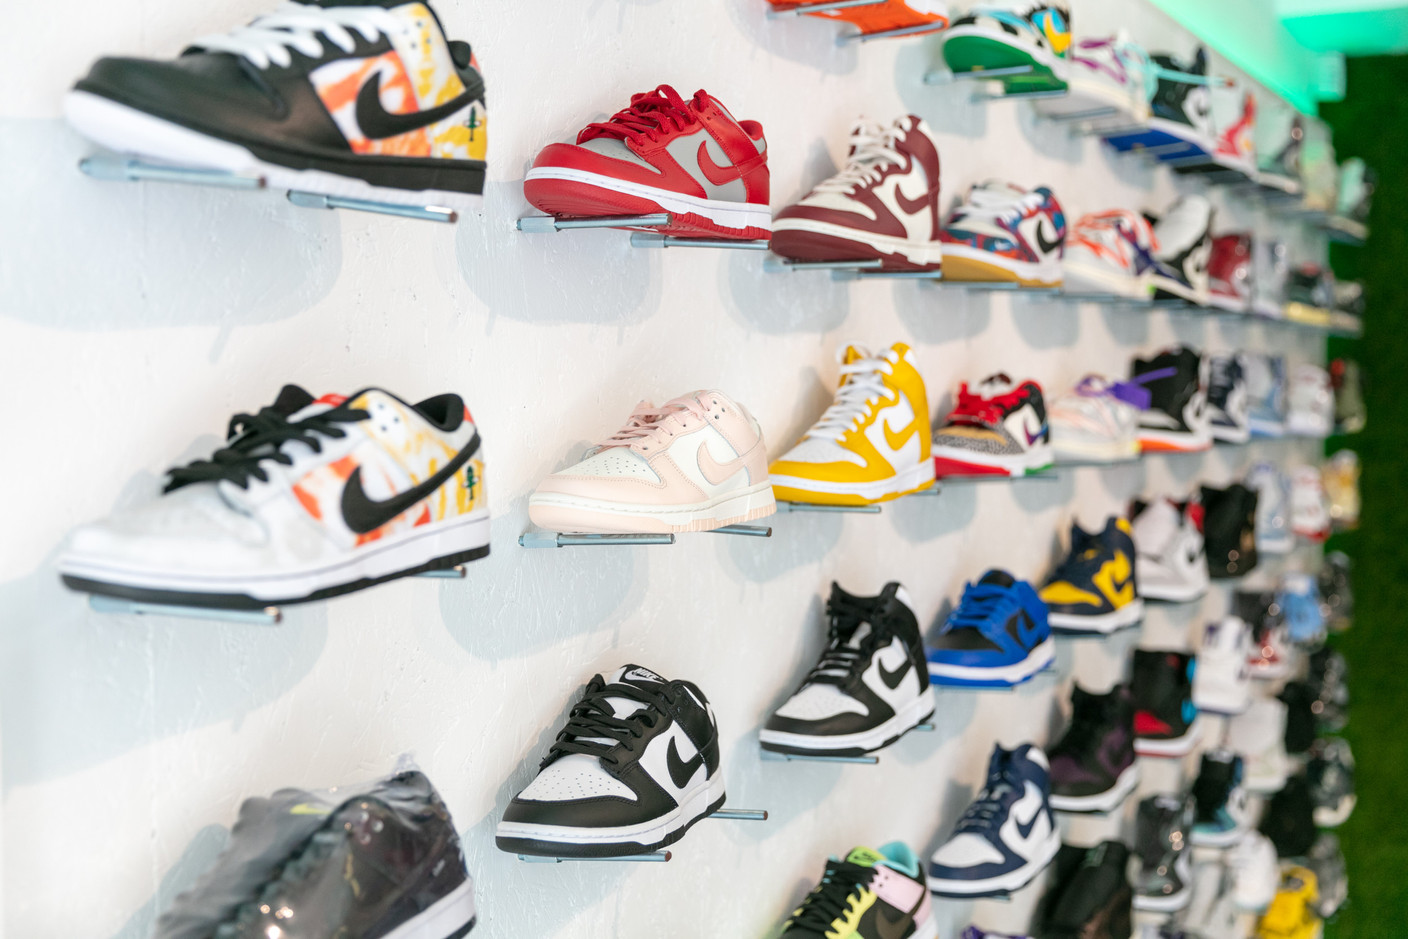 Nike est la marque la plus demandée et donc la plus présente chez The Source. (Photo: Romain Gamba / Maison Moderne)